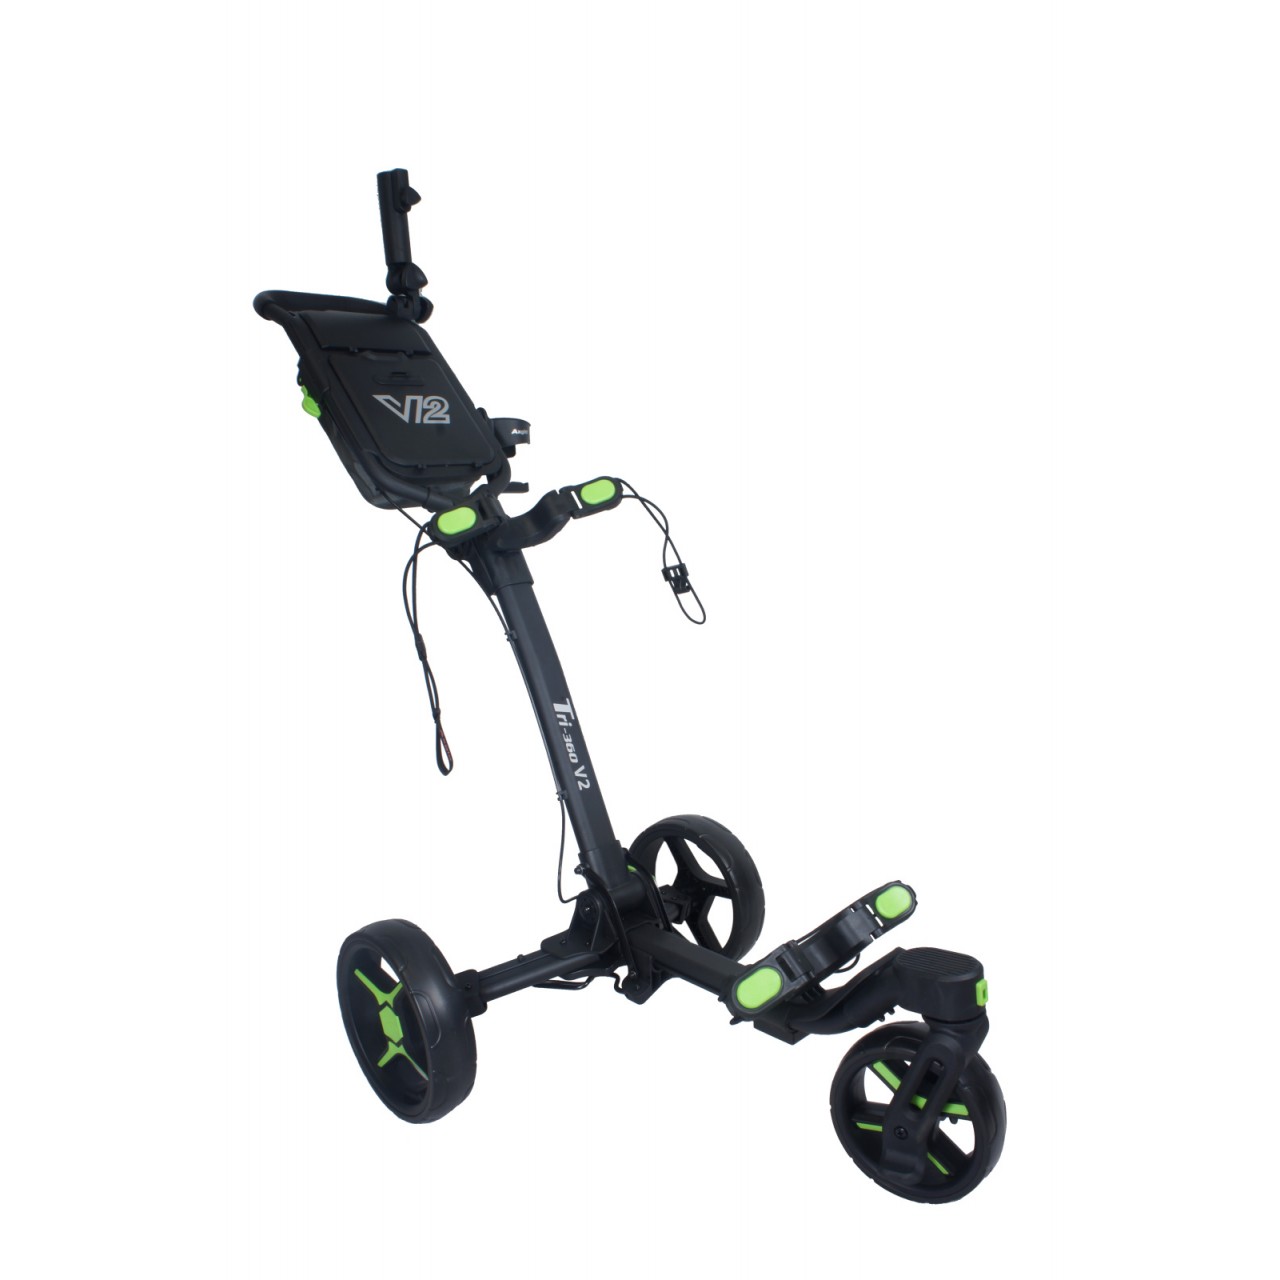 AXGLO Tri-360 V2 ruèní tøíkolový golfový vozík BLACK/GREEN + ZDARMA obal na kola - zvìtšit obrázek